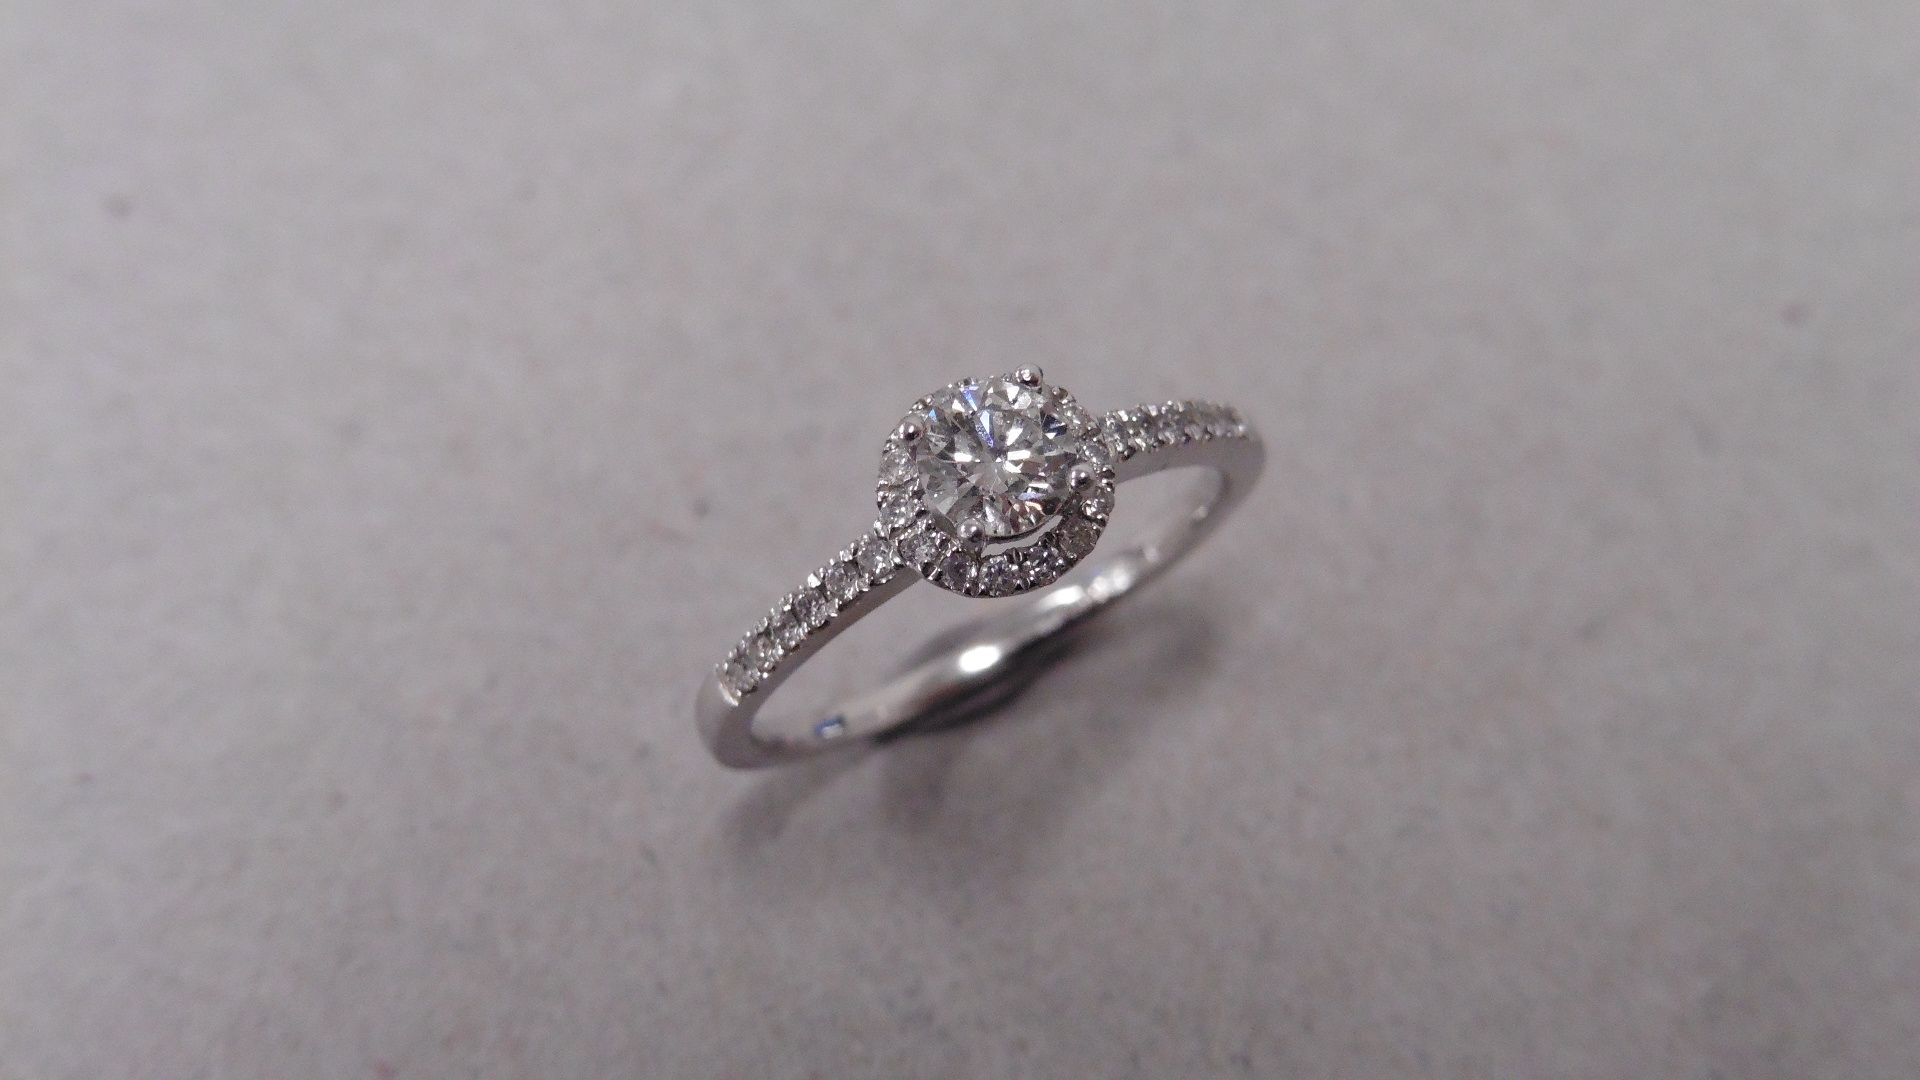 18ct diamond set solitaire ring. Centre stone 0.30ct brilliant cut diamond, H colour and si2